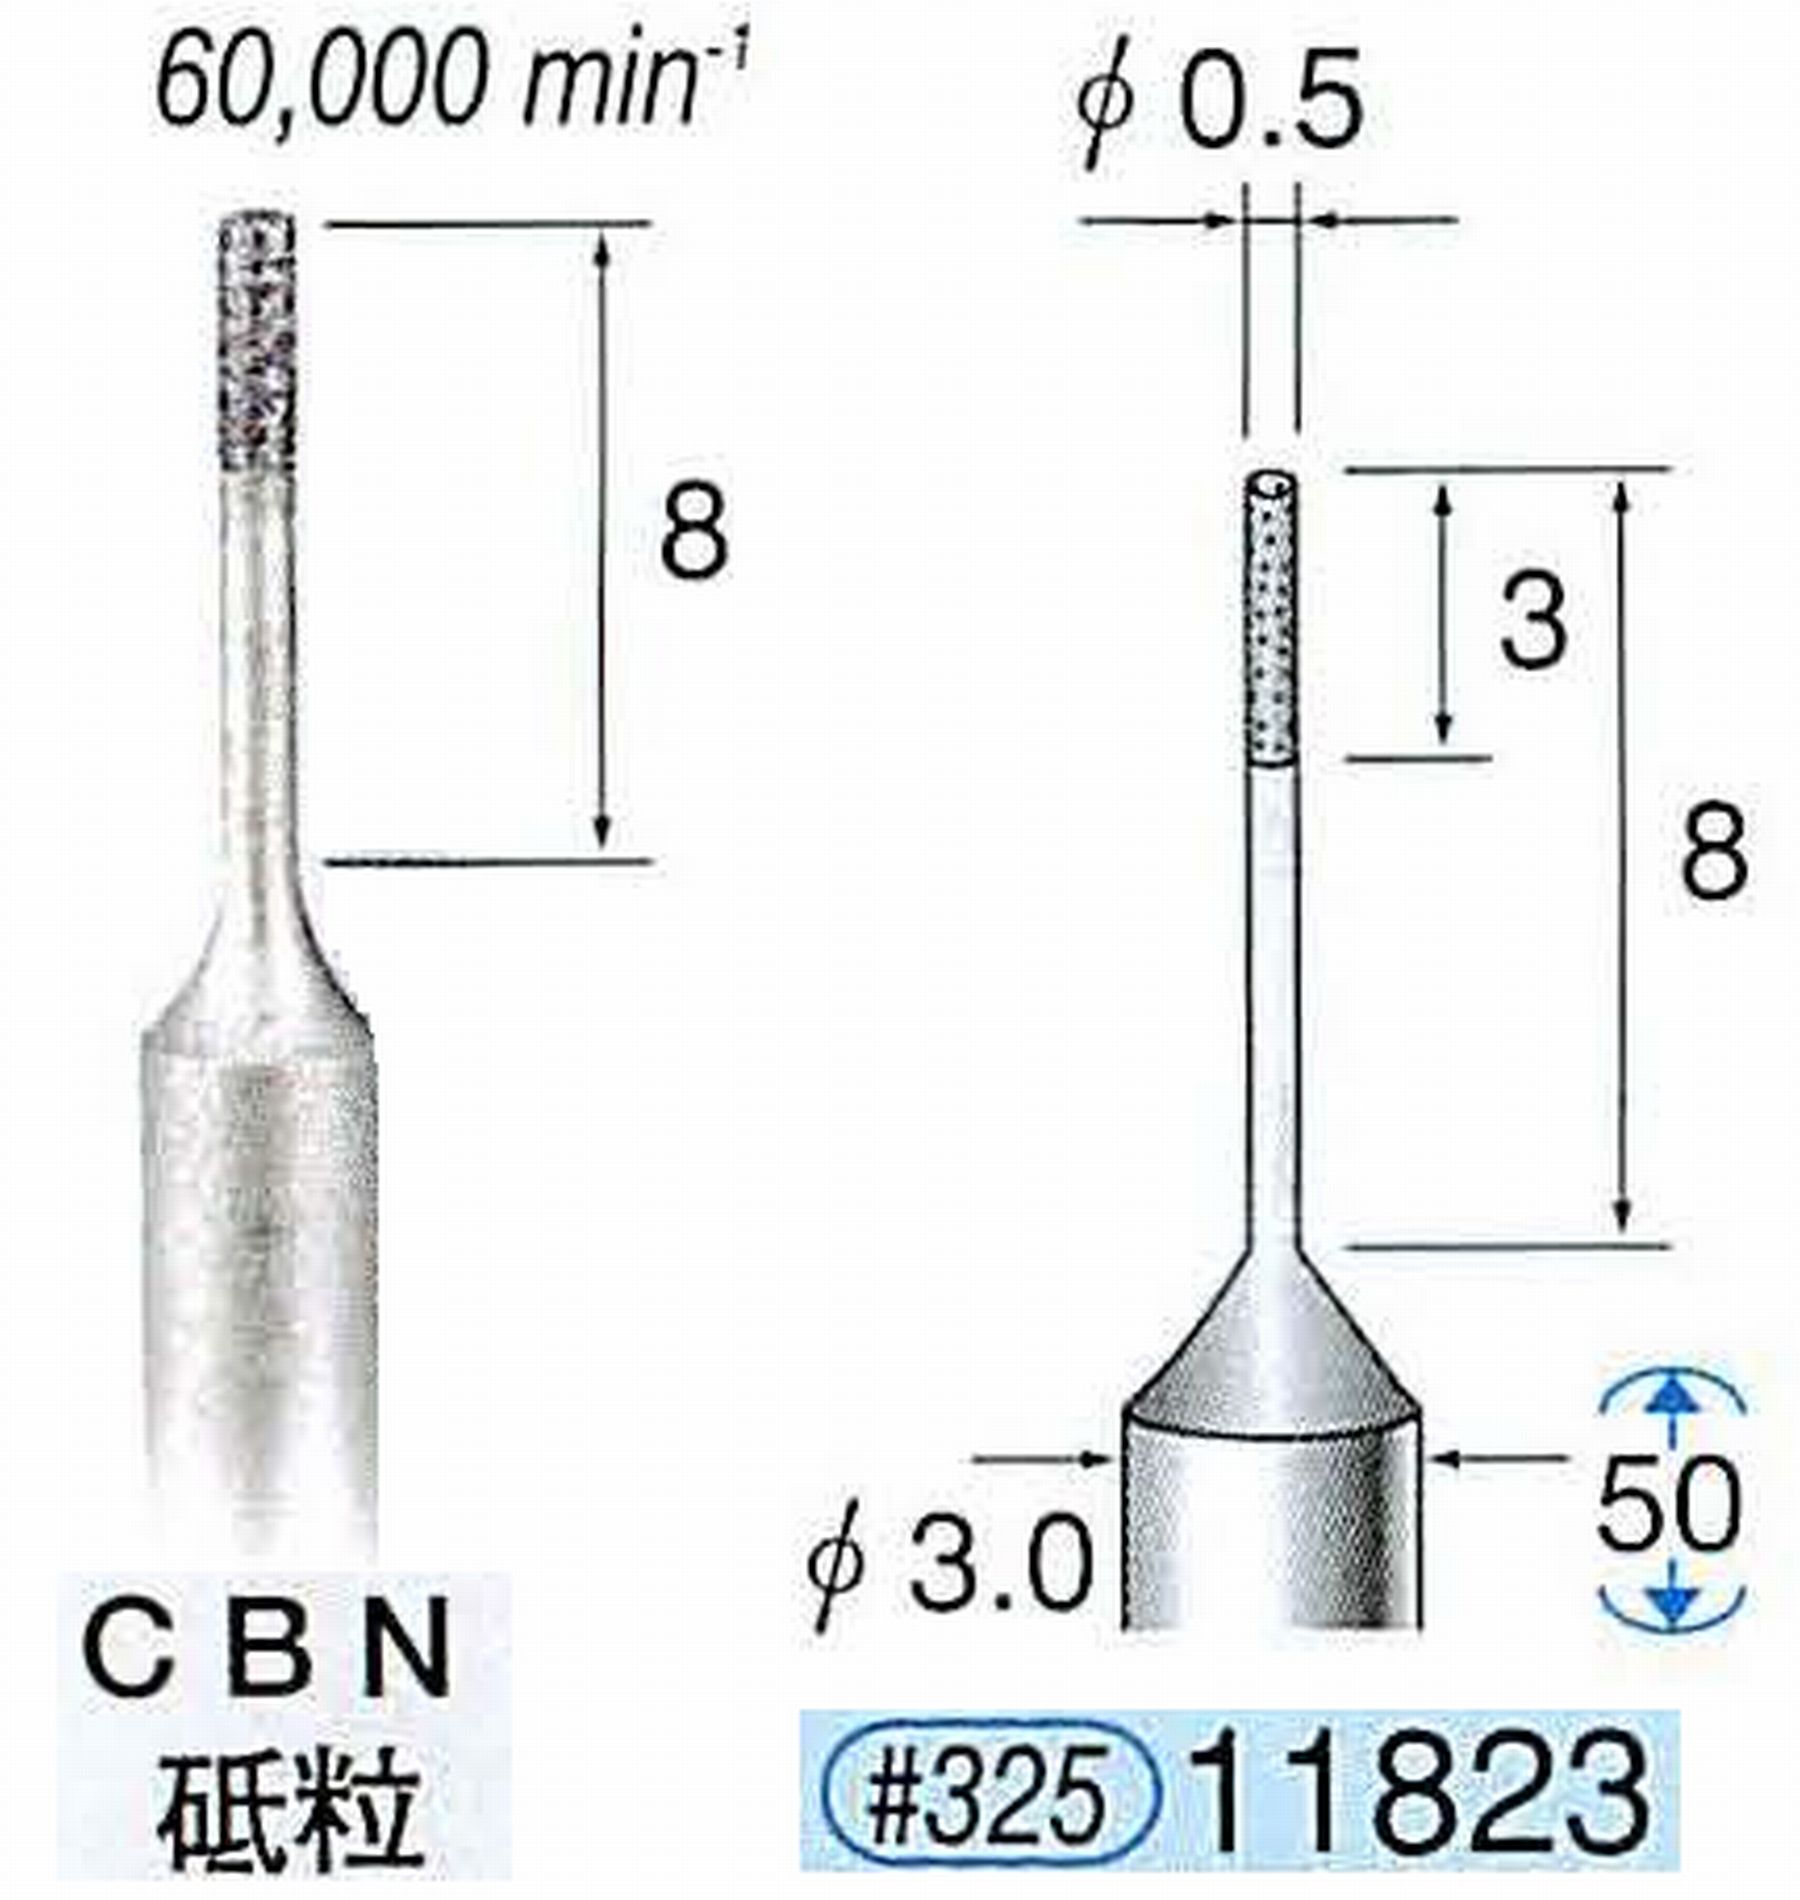 ナカニシ/NAKANISHI SP電着CBNバー CBN砥粒 軸径(シャンク)φ3.0mm 11823